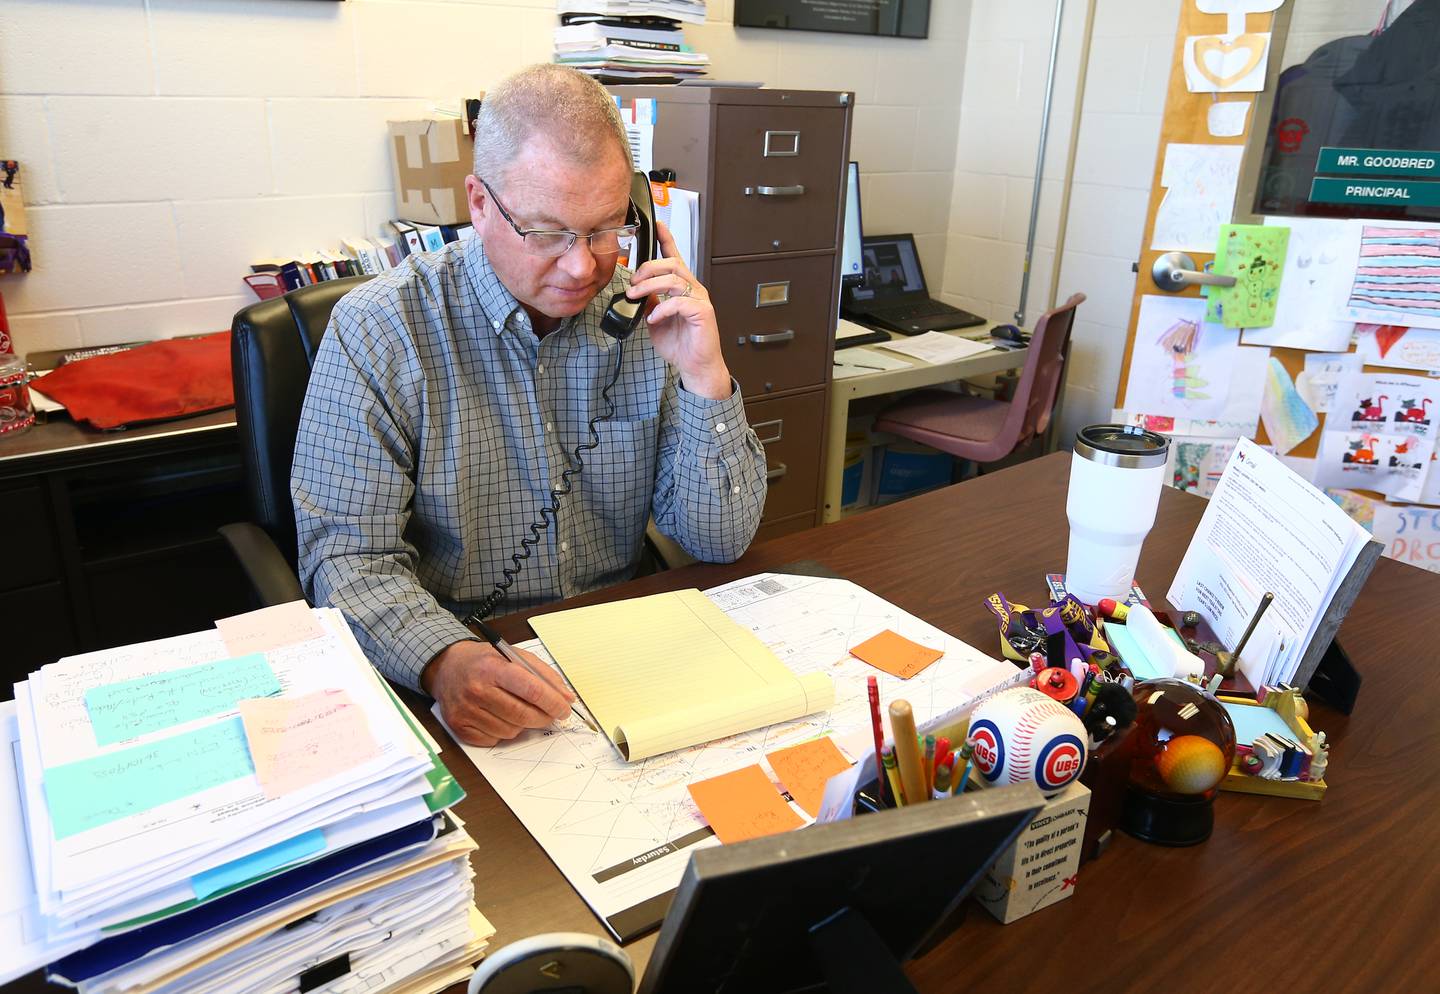 Randy Goodbred principal at Sheridan Grade School, makes a phone call at his desk on Tuesday May 15, 2022 in Sheridan.